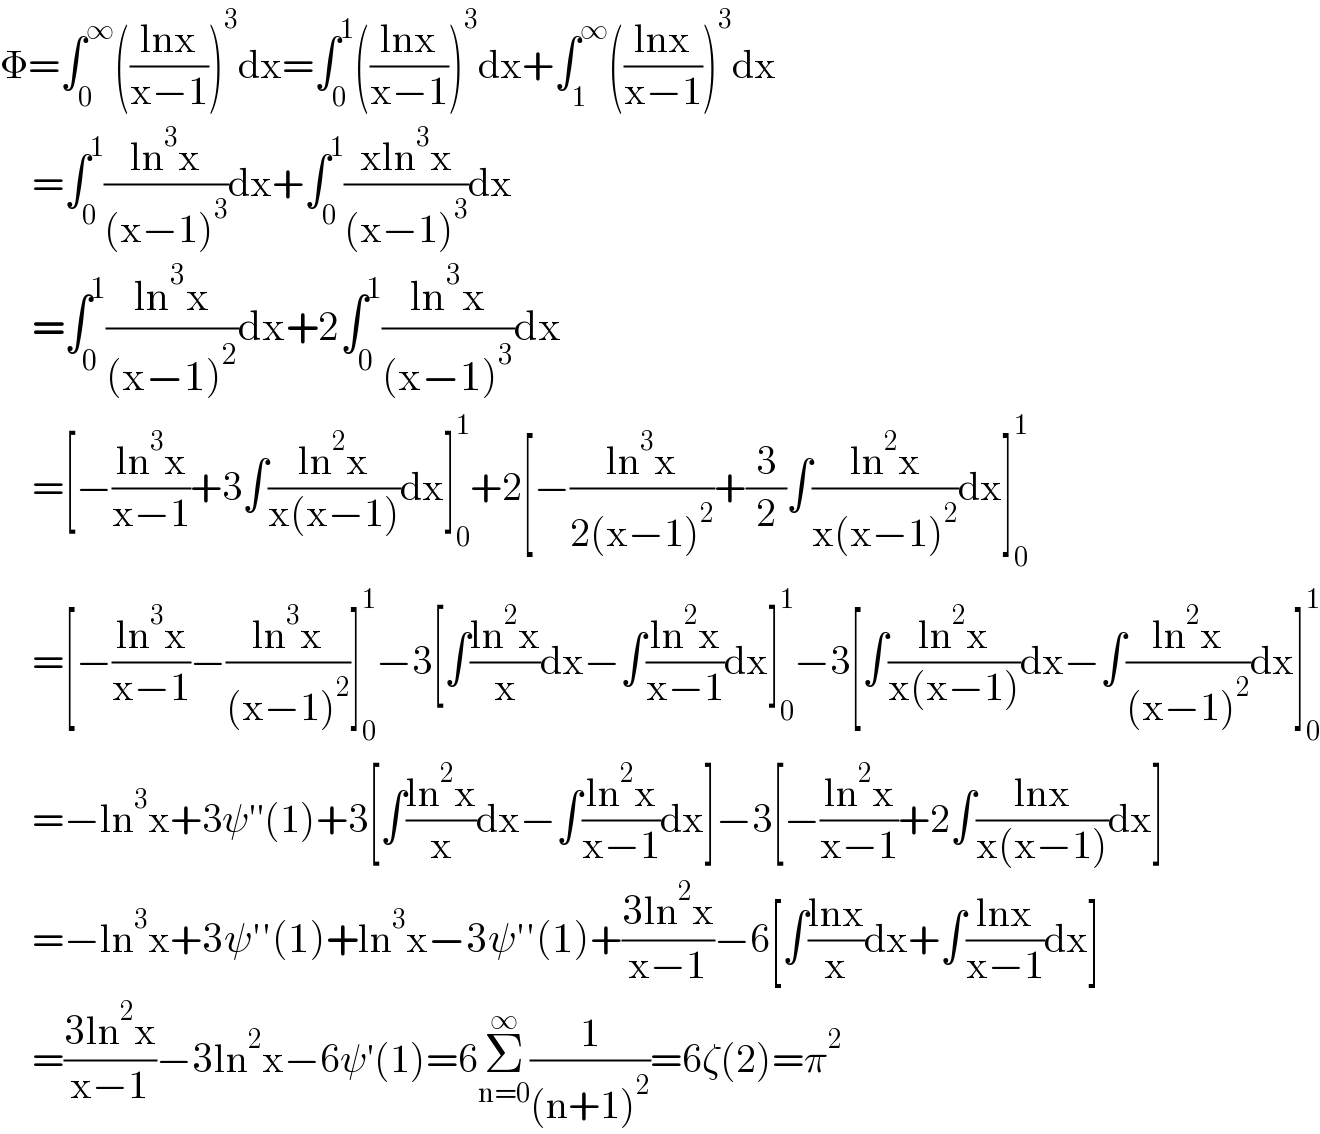 Φ=∫_0 ^∞ (((lnx)/(x−1)))^3 dx=∫_0 ^1 (((lnx)/(x−1)))^3 dx+∫_1 ^∞ (((lnx)/(x−1)))^3 dx      =∫_0 ^1 ((ln^3 x)/((x−1)^3 ))dx+∫_0 ^1 ((xln^3 x)/((x−1)^3 ))dx      =∫_0 ^1 ((ln^3 x)/((x−1)^2 ))dx+2∫_0 ^1 ((ln^3 x)/((x−1)^3 ))dx      =[−((ln^3 x)/(x−1))+3∫((ln^2 x)/(x(x−1)))dx]_0 ^1 +2[−((ln^3 x)/(2(x−1)^2 ))+(3/2)∫((ln^2 x)/(x(x−1)^2 ))dx]_0 ^1       =[−((ln^3 x)/(x−1))−((ln^3 x)/((x−1)^2 ))]_0 ^1 −3[∫((ln^2 x)/x)dx−∫((ln^2 x)/(x−1))dx]_0 ^1 −3[∫((ln^2 x)/(x(x−1)))dx−∫((ln^2 x)/((x−1)^2 ))dx]_0 ^1       =−ln^3 x+3ψ′′(1)+3[∫((ln^2 x)/x)dx−∫((ln^2 x)/(x−1))dx]−3[−((ln^2 x)/(x−1))+2∫((lnx)/(x(x−1)))dx]      =−ln^3 x+3ψ′′(1)+ln^3 x−3ψ′′(1)+((3ln^2 x)/(x−1))−6[∫((lnx)/x)dx+∫((lnx)/(x−1))dx]      =((3ln^2 x)/(x−1))−3ln^2 x−6ψ′(1)=6Σ_(n=0) ^∞ (1/((n+1)^2 ))=6ζ(2)=π^2   